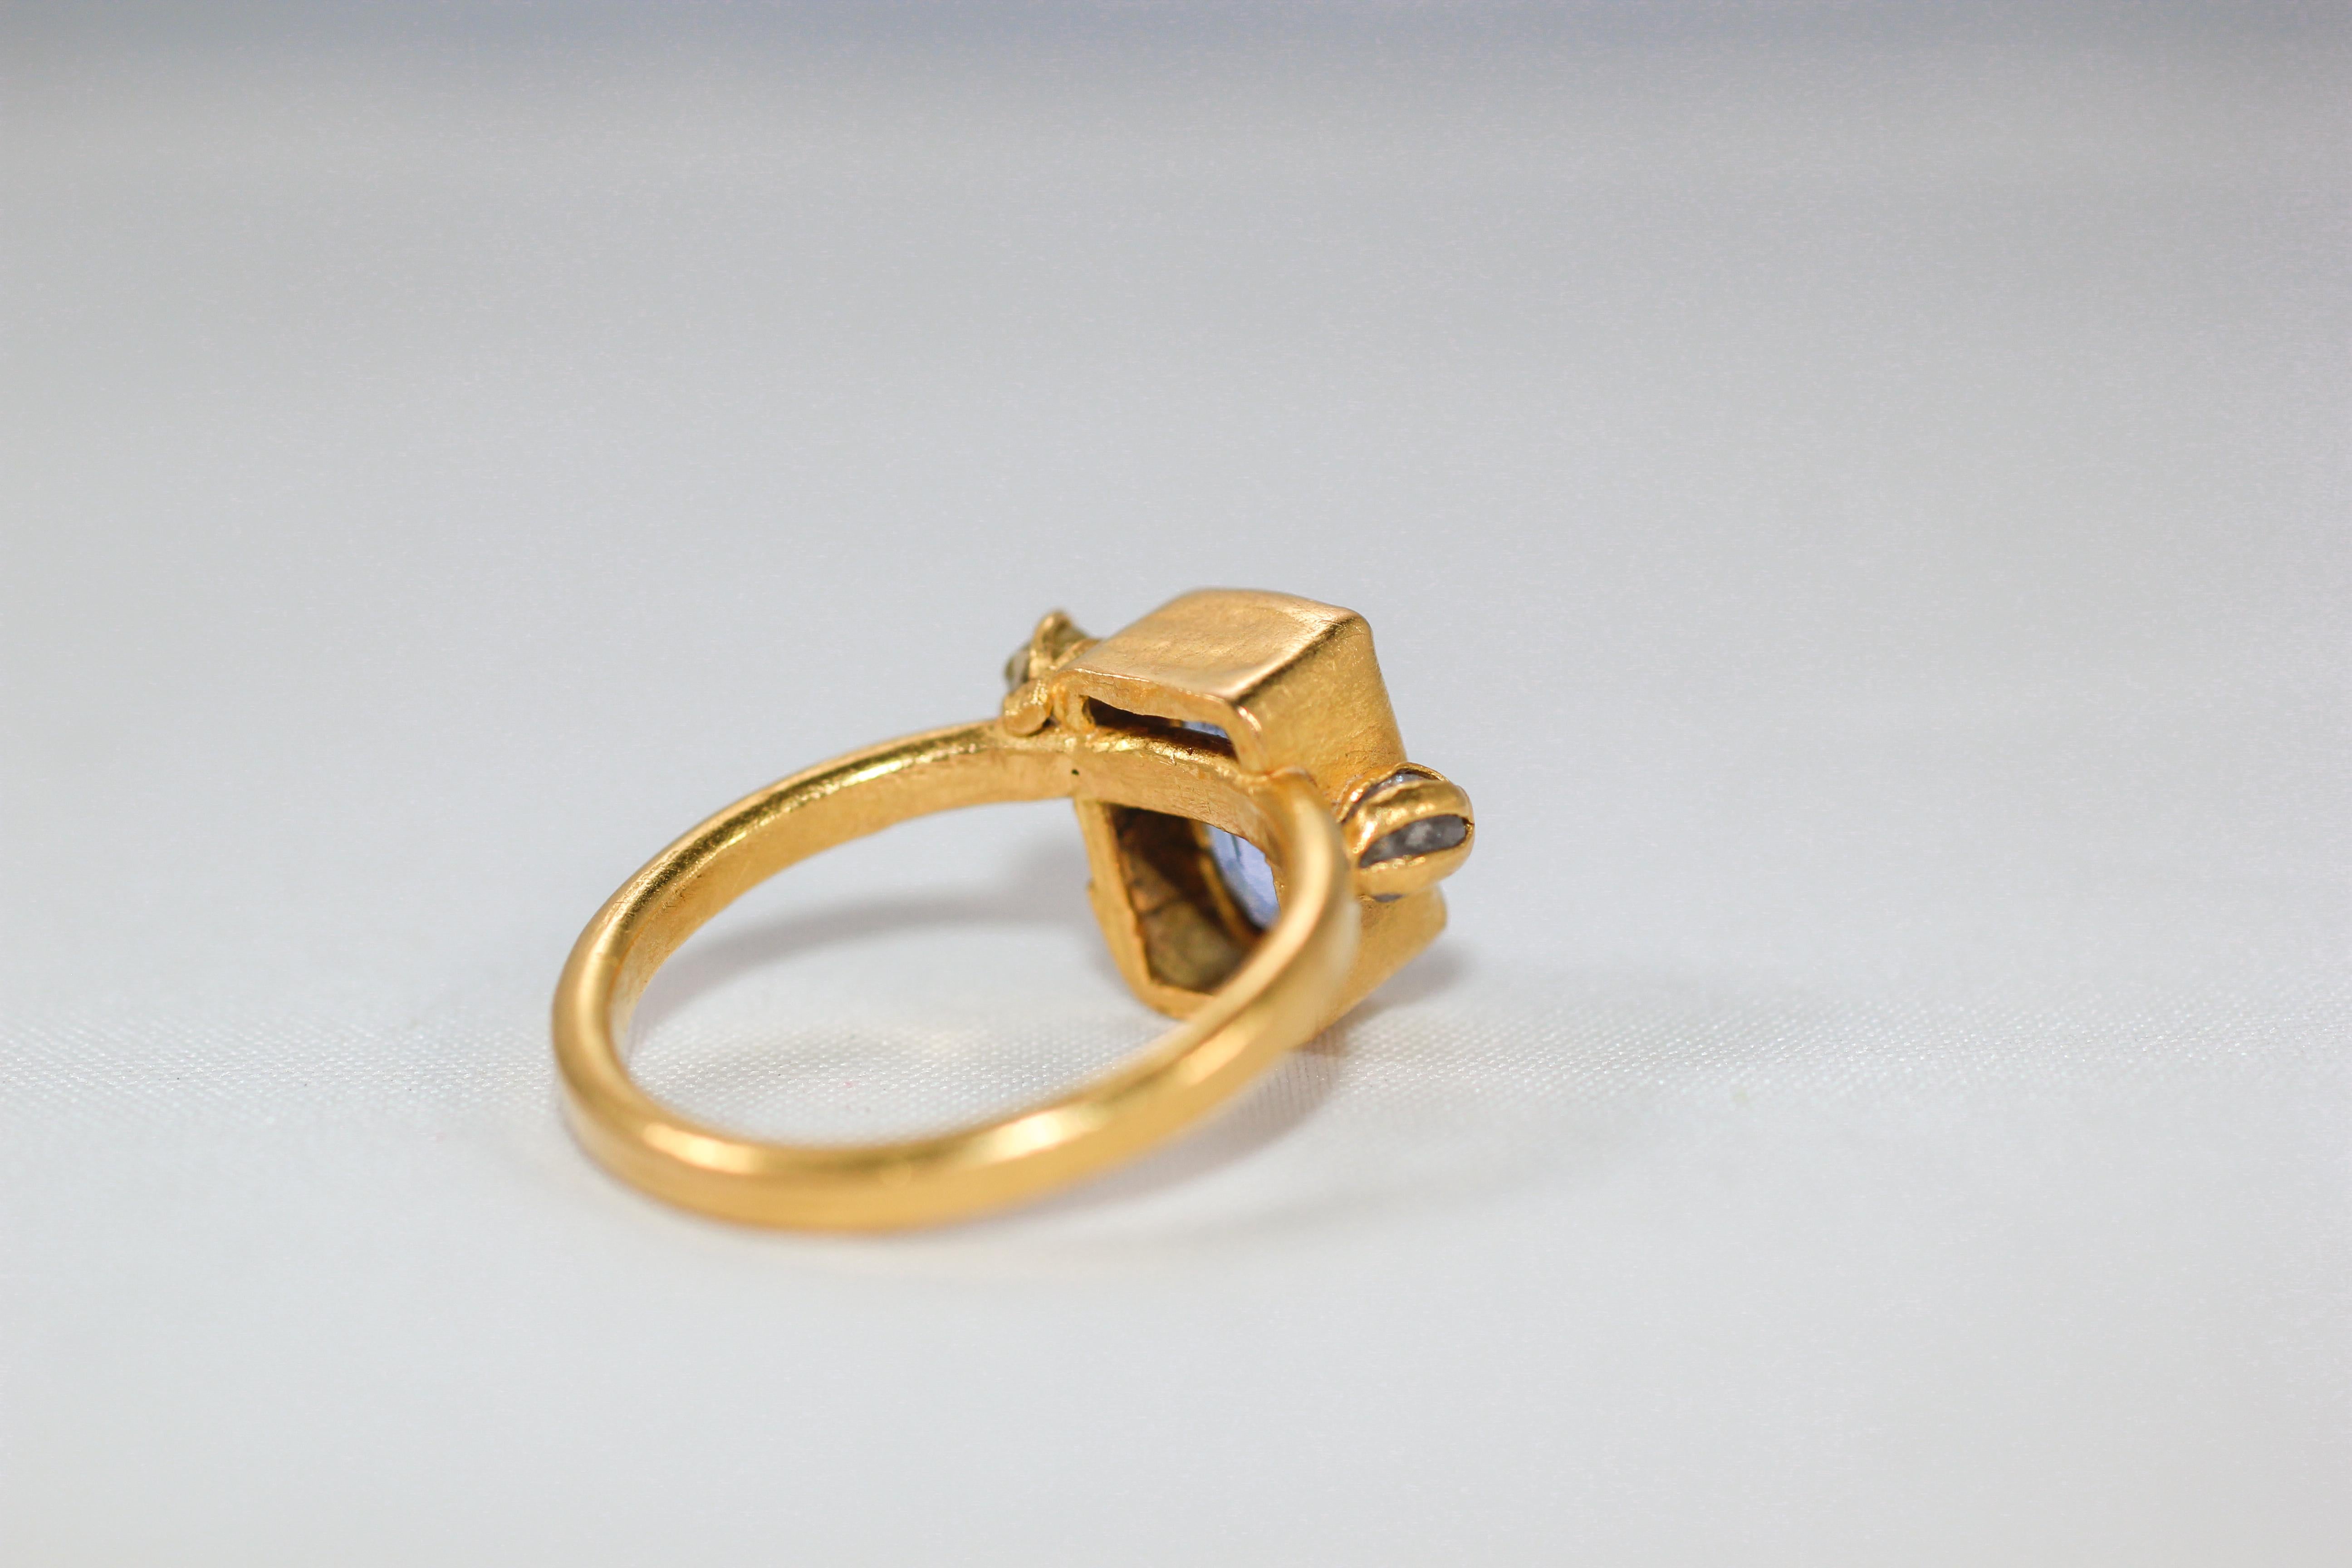 21 karat gold ring price